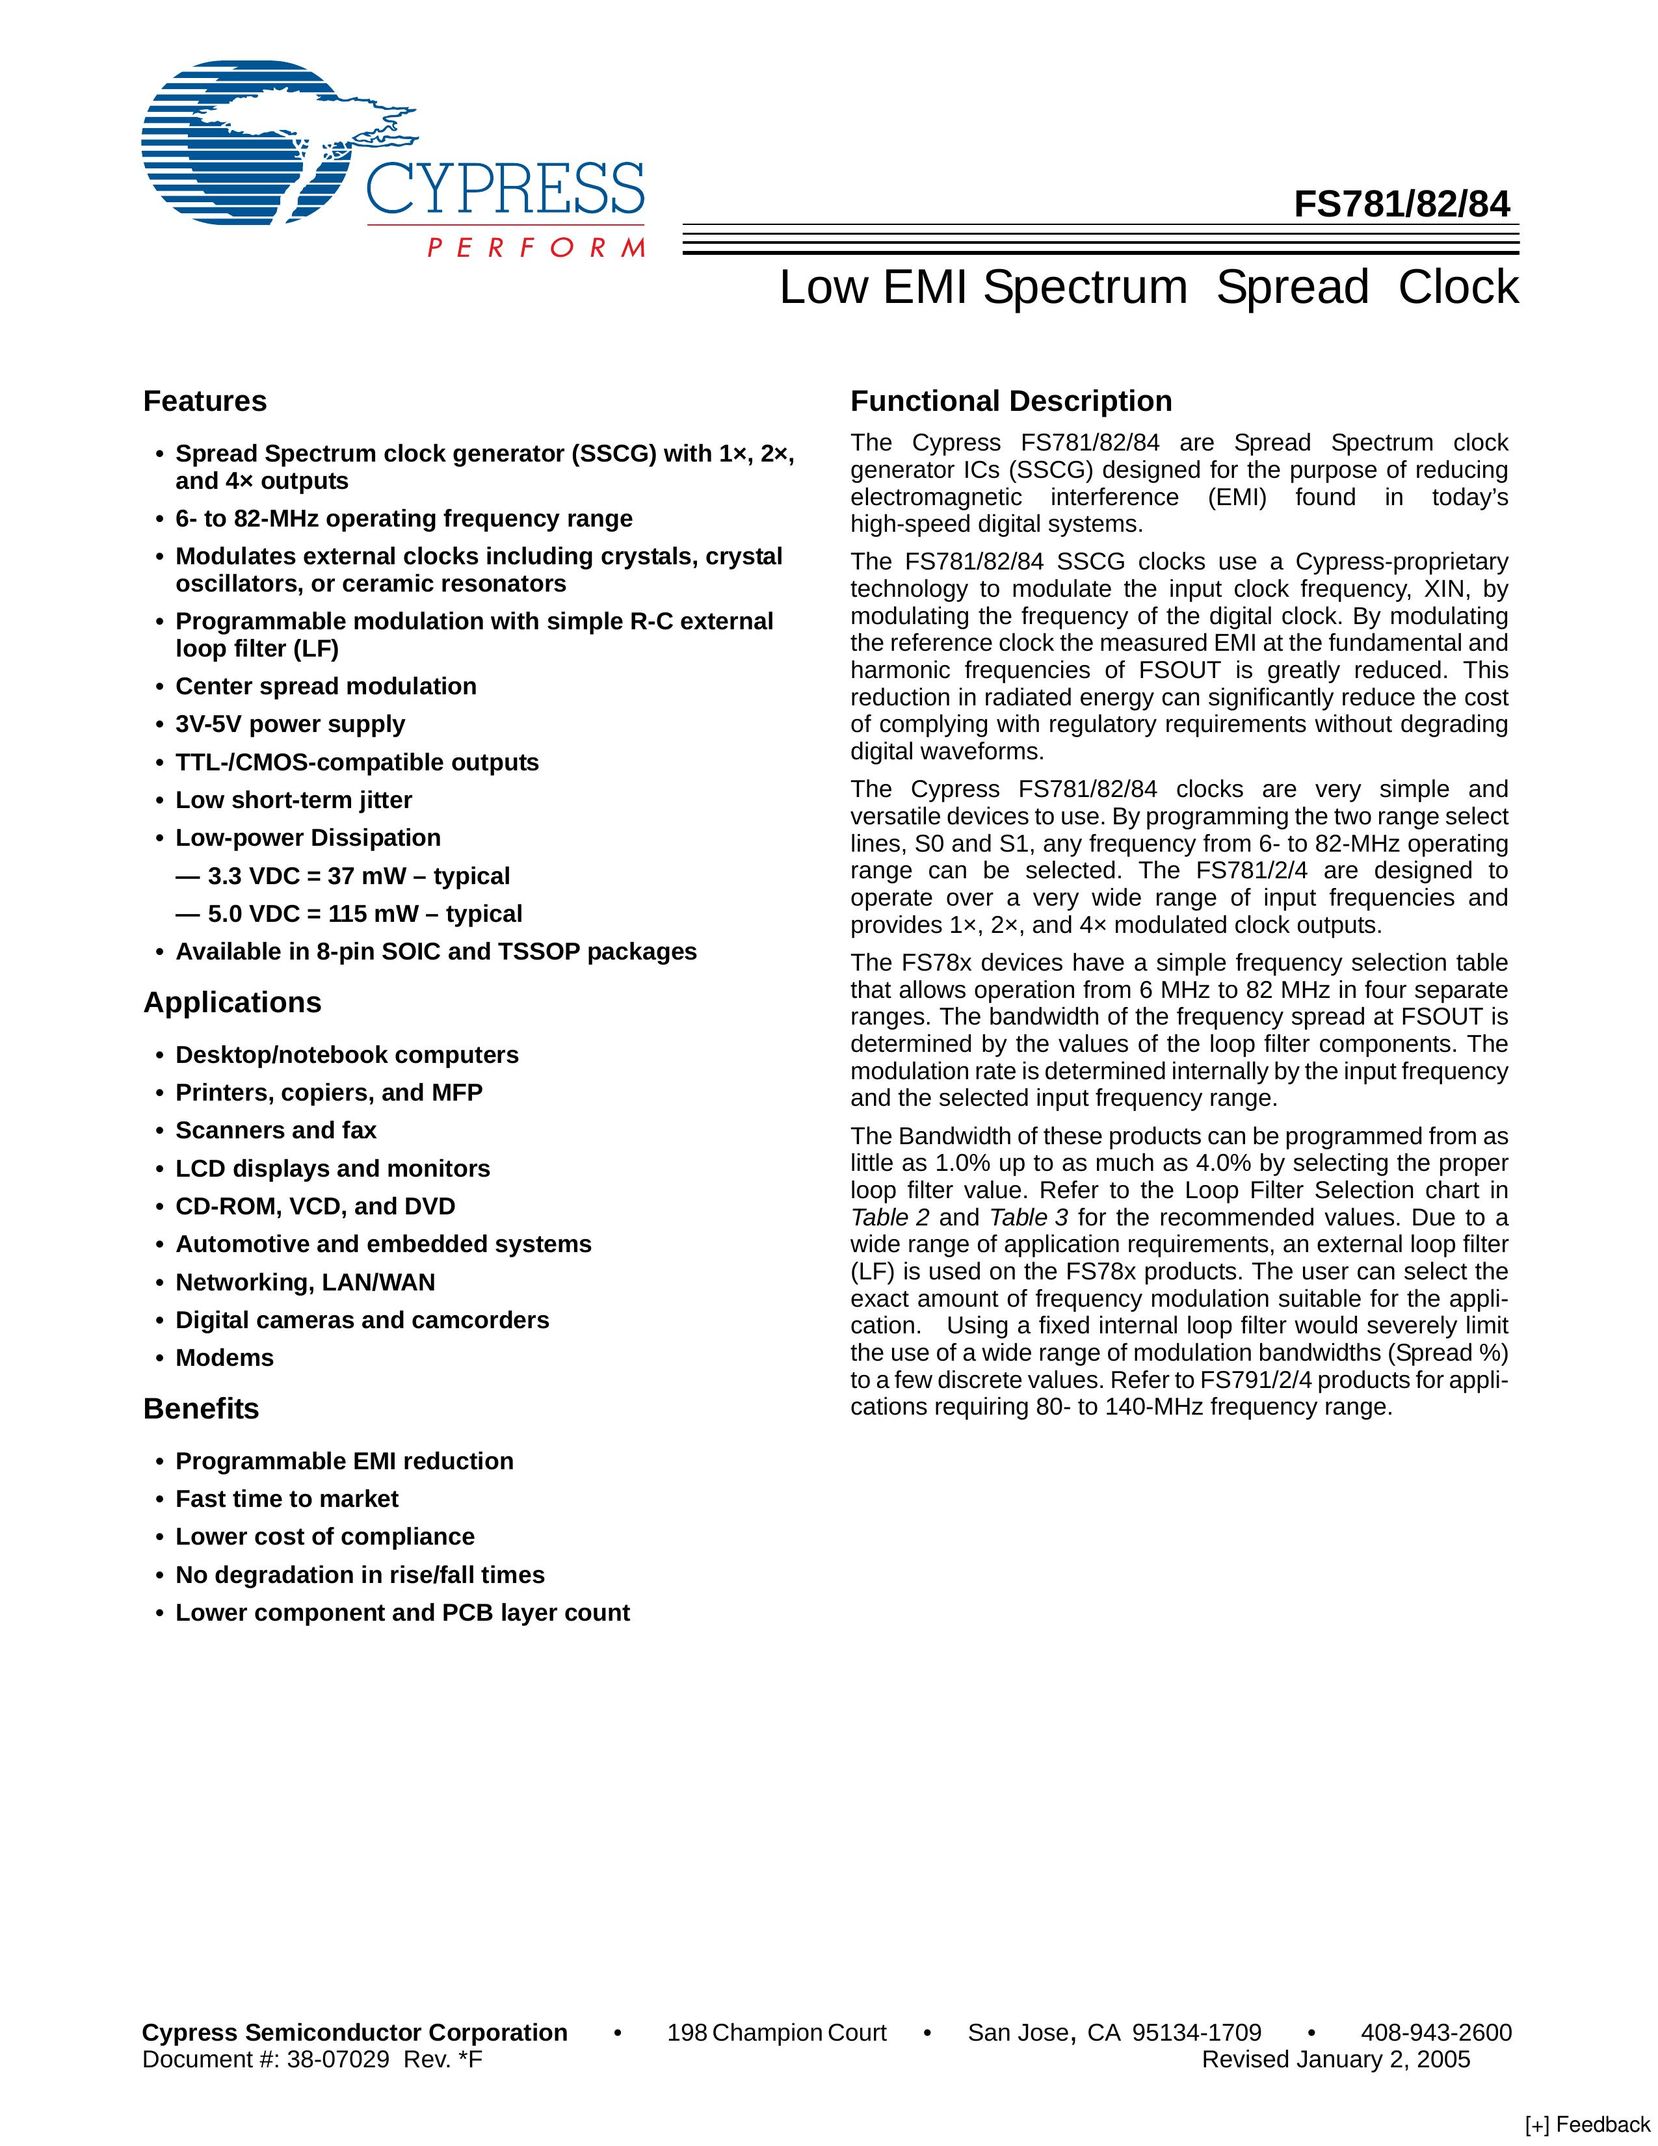 Cypress FS781 Clock User Manual